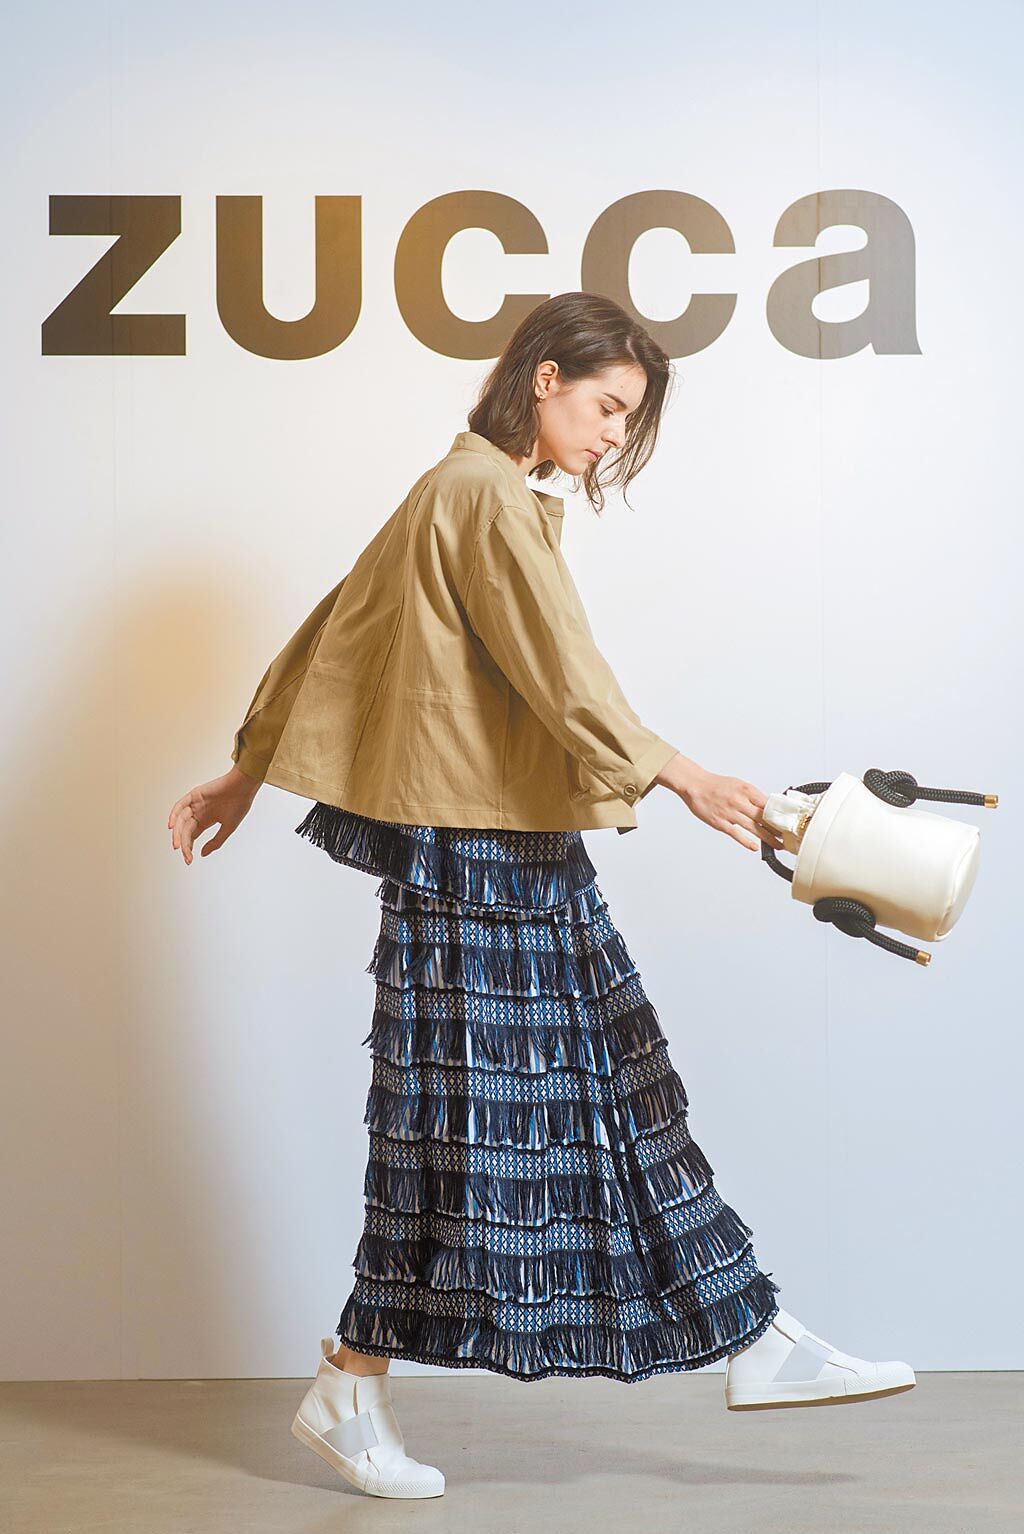 ZUCCa的最大賣點是異材質和手工設計。ZUCCa流蘇平織短袖上衣8600元、緞面流蘇長裙1萬7200元、輕盈卡其外套1萬6200元、繩結水桶手提包9200元。（君梵提供）